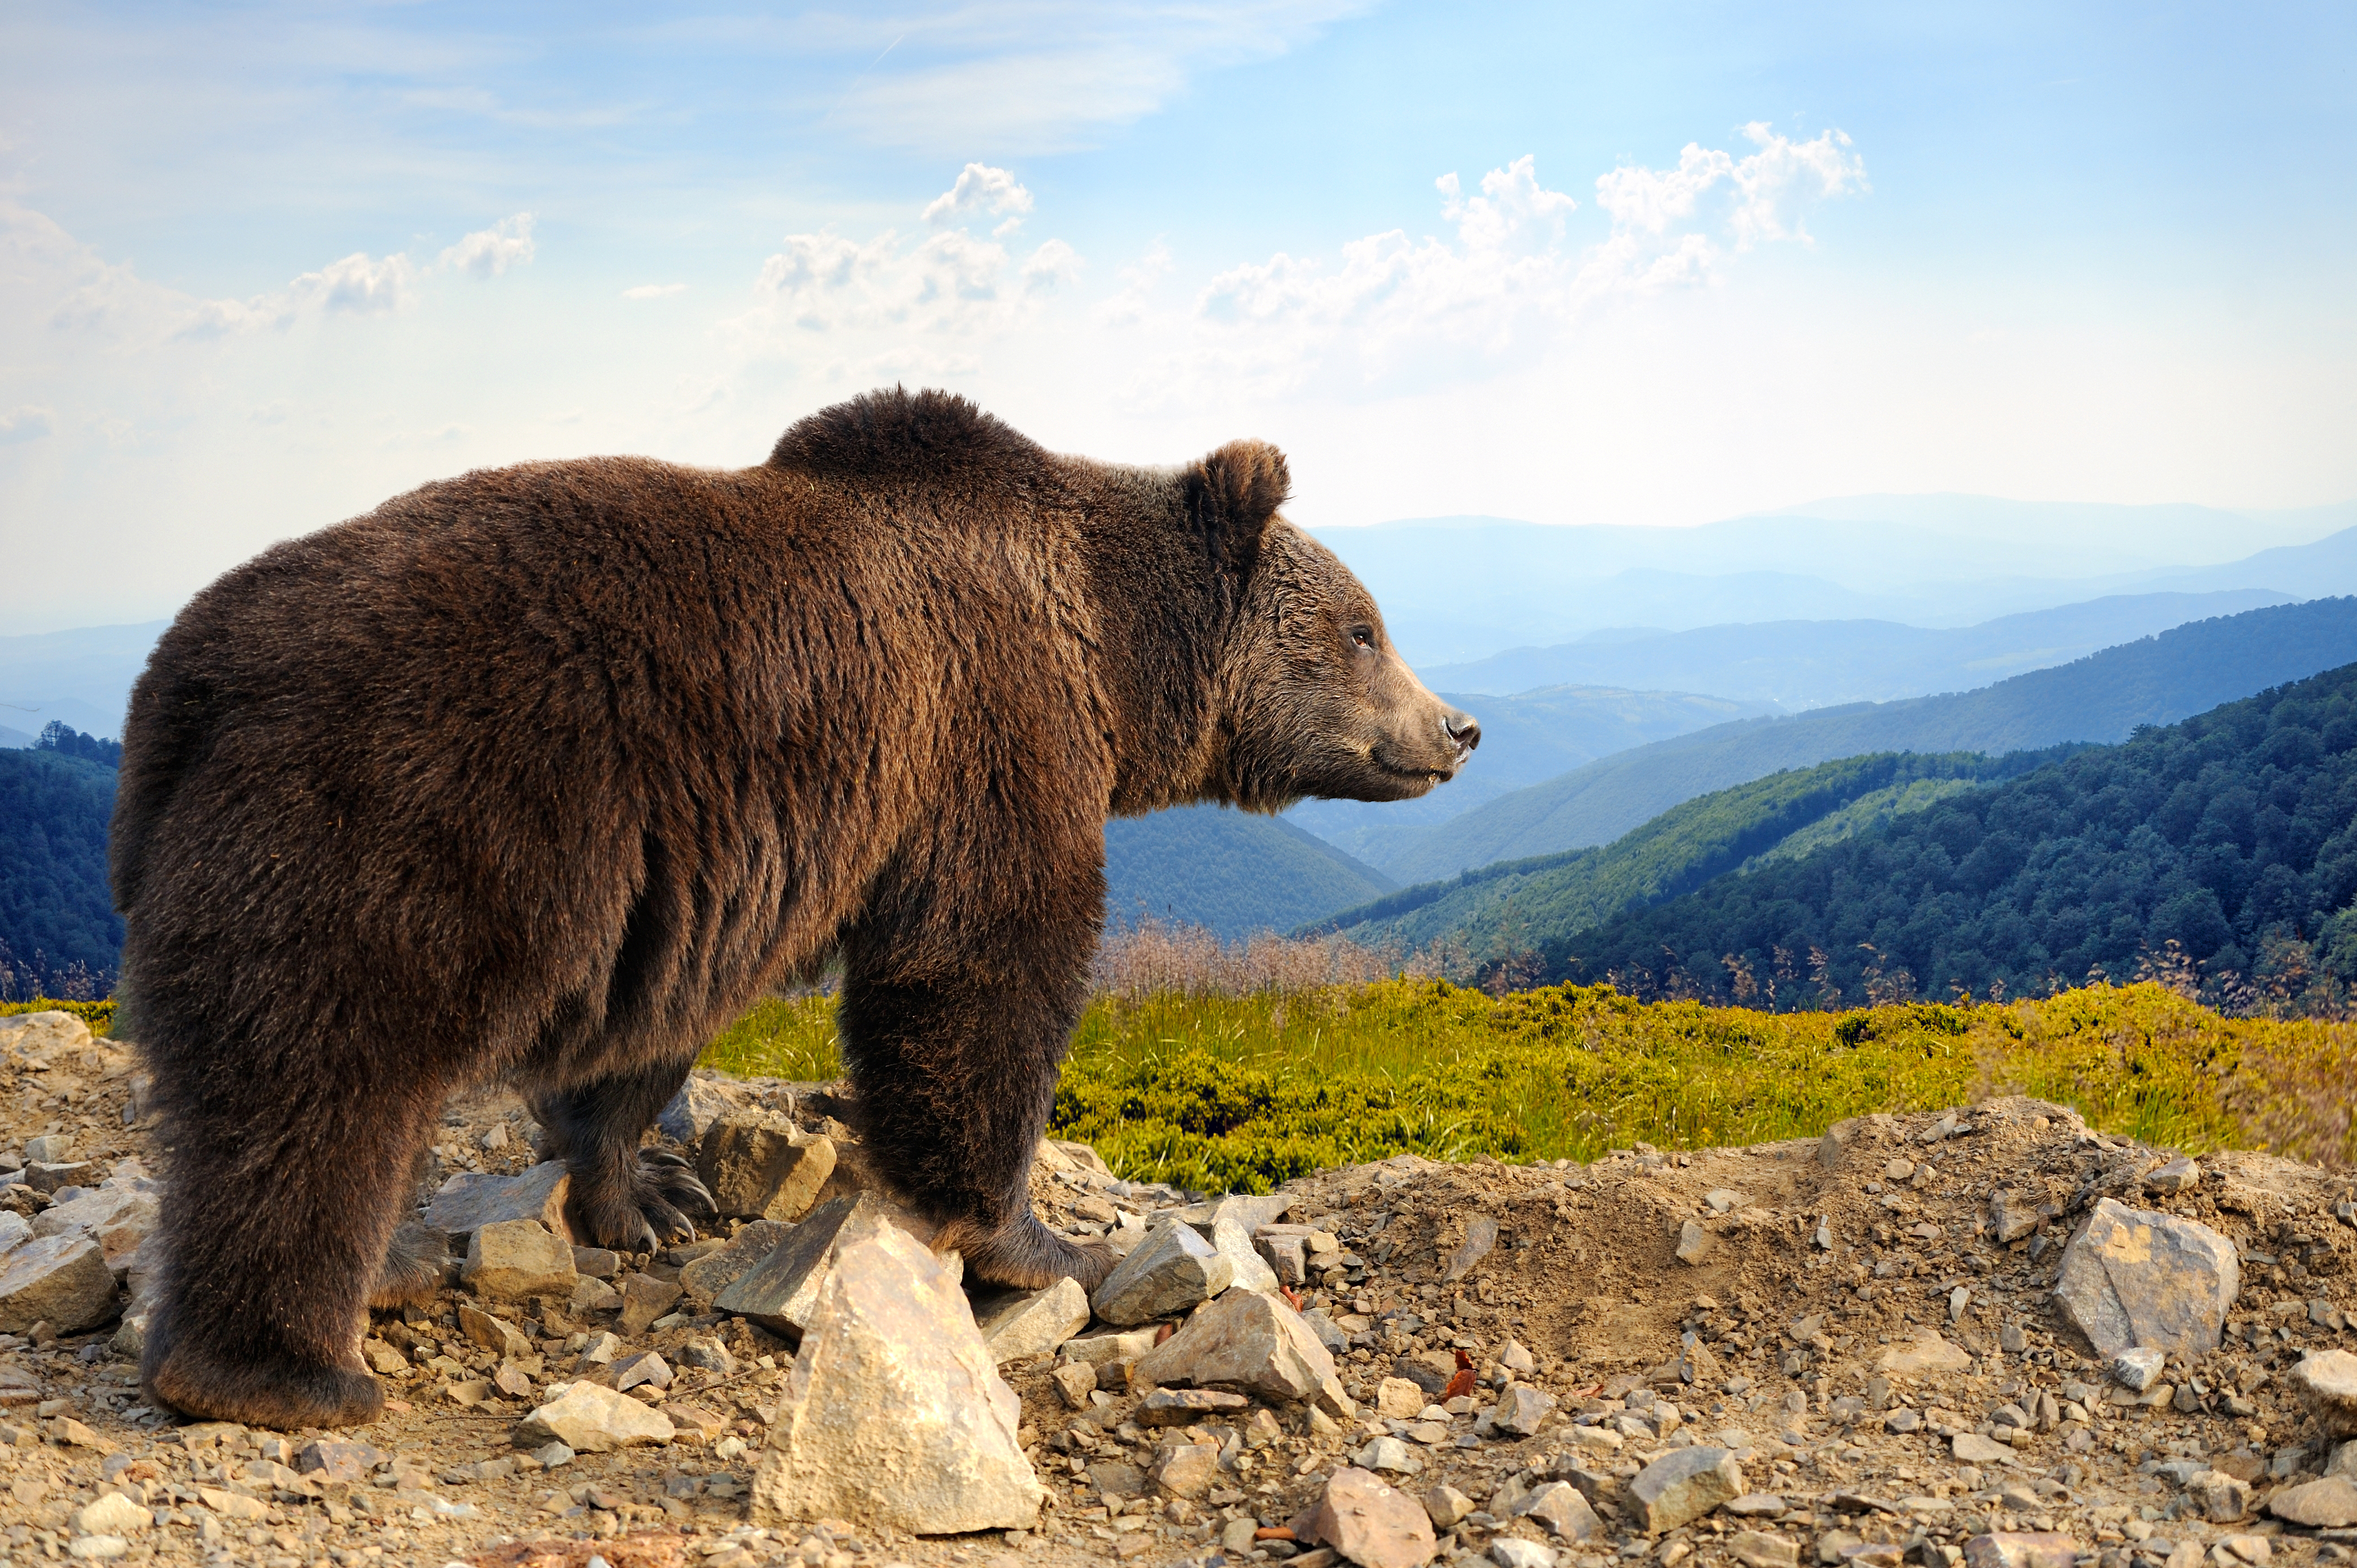 A brown bear on a hillside